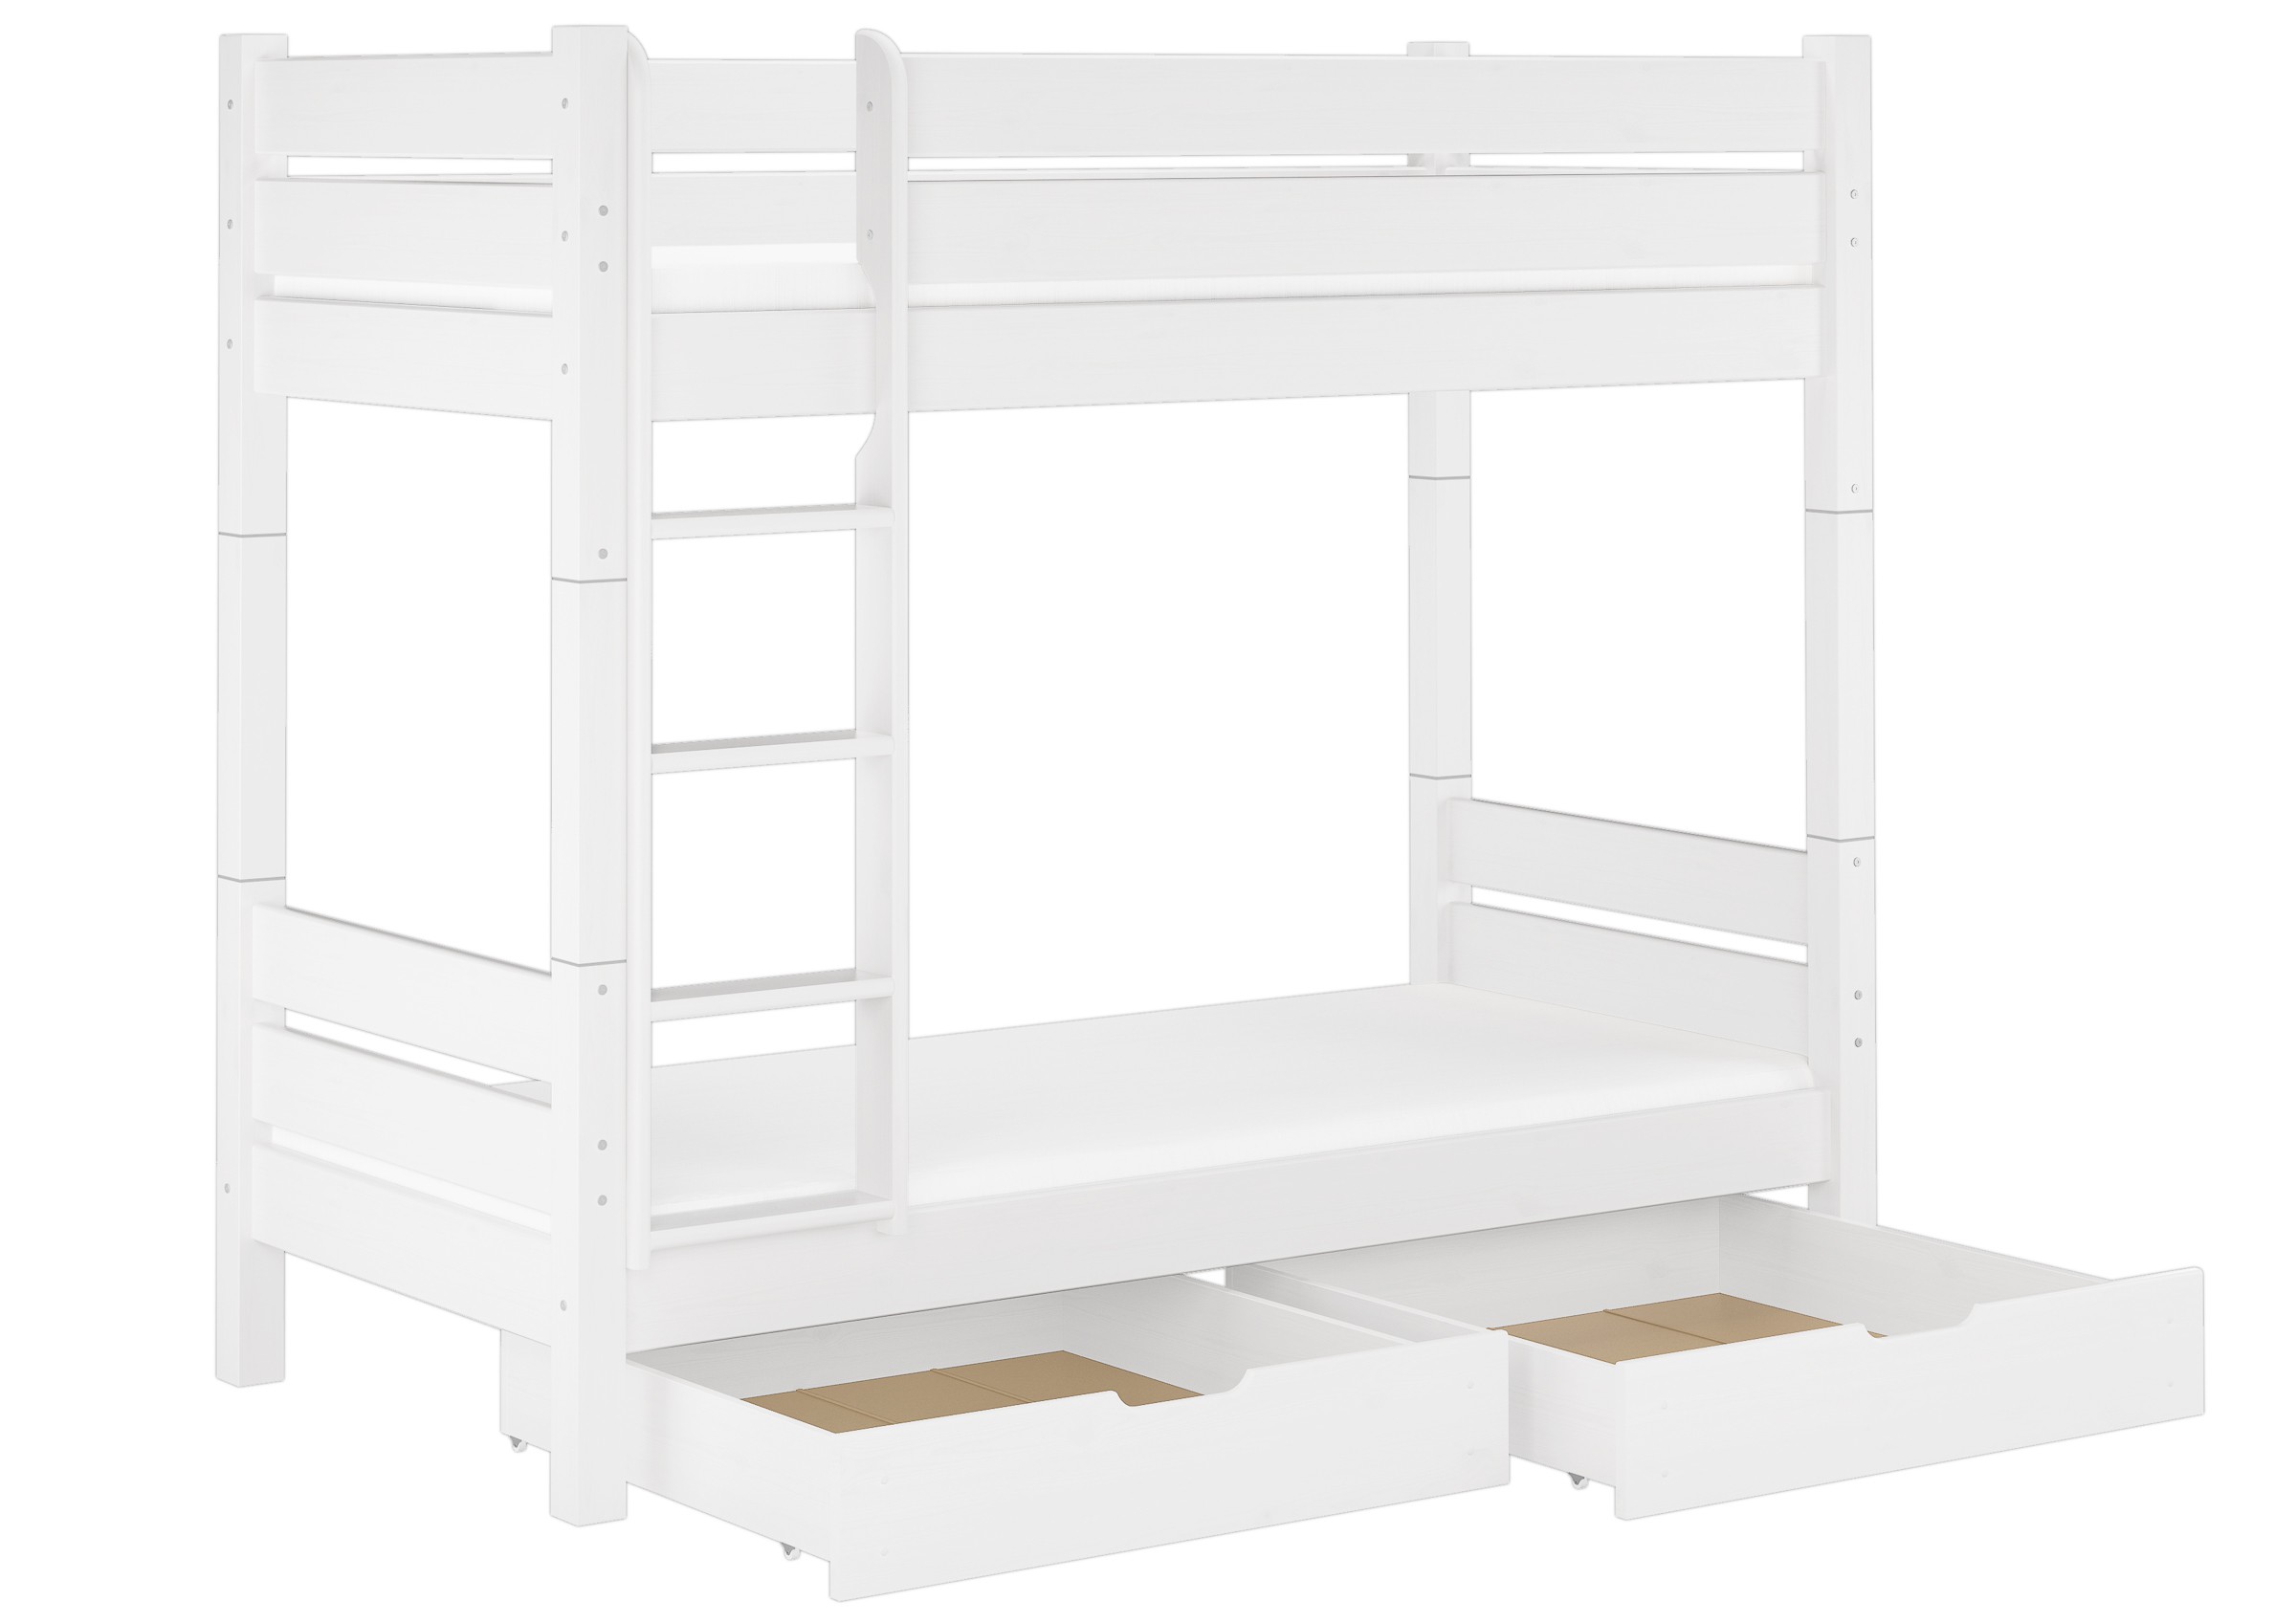 An overview of bunk bed mattress